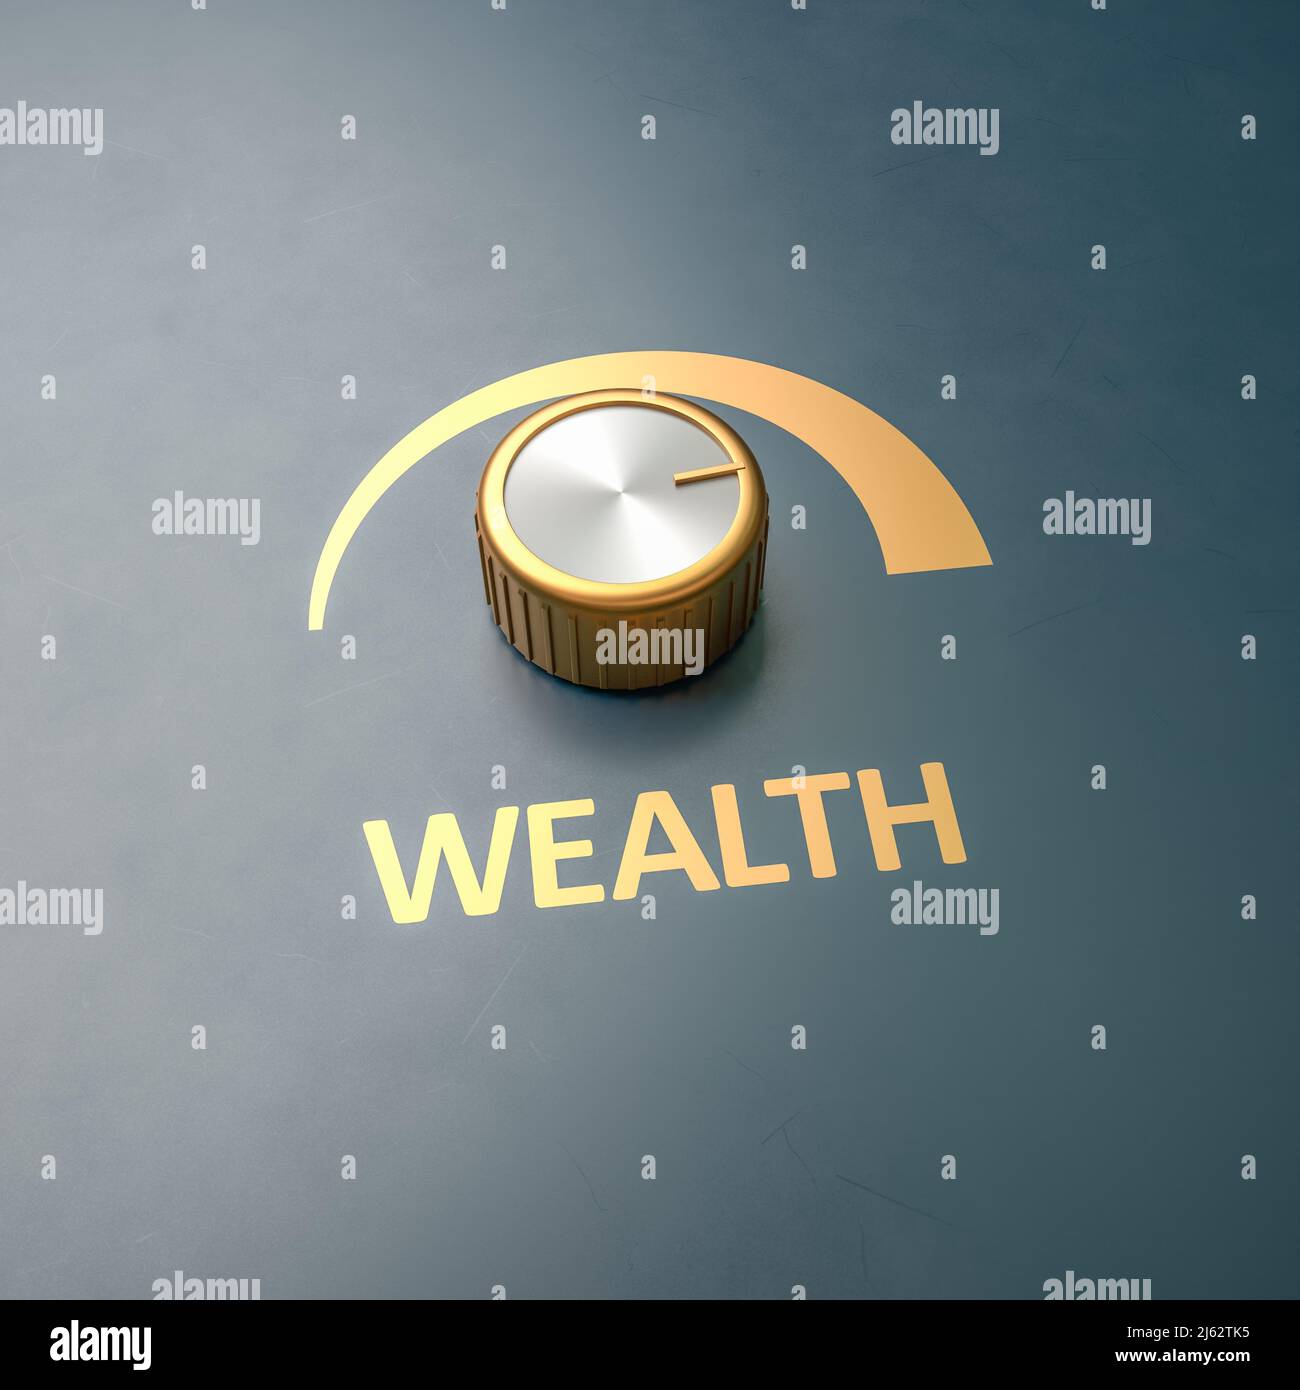 Golden Knob drehte sich in voller Größe mit dem Wort 'Wealth' als Label - Konzept für das Erhalten von Wohlstand. Platz zum besseren Zuschneiden kopieren Stockfoto